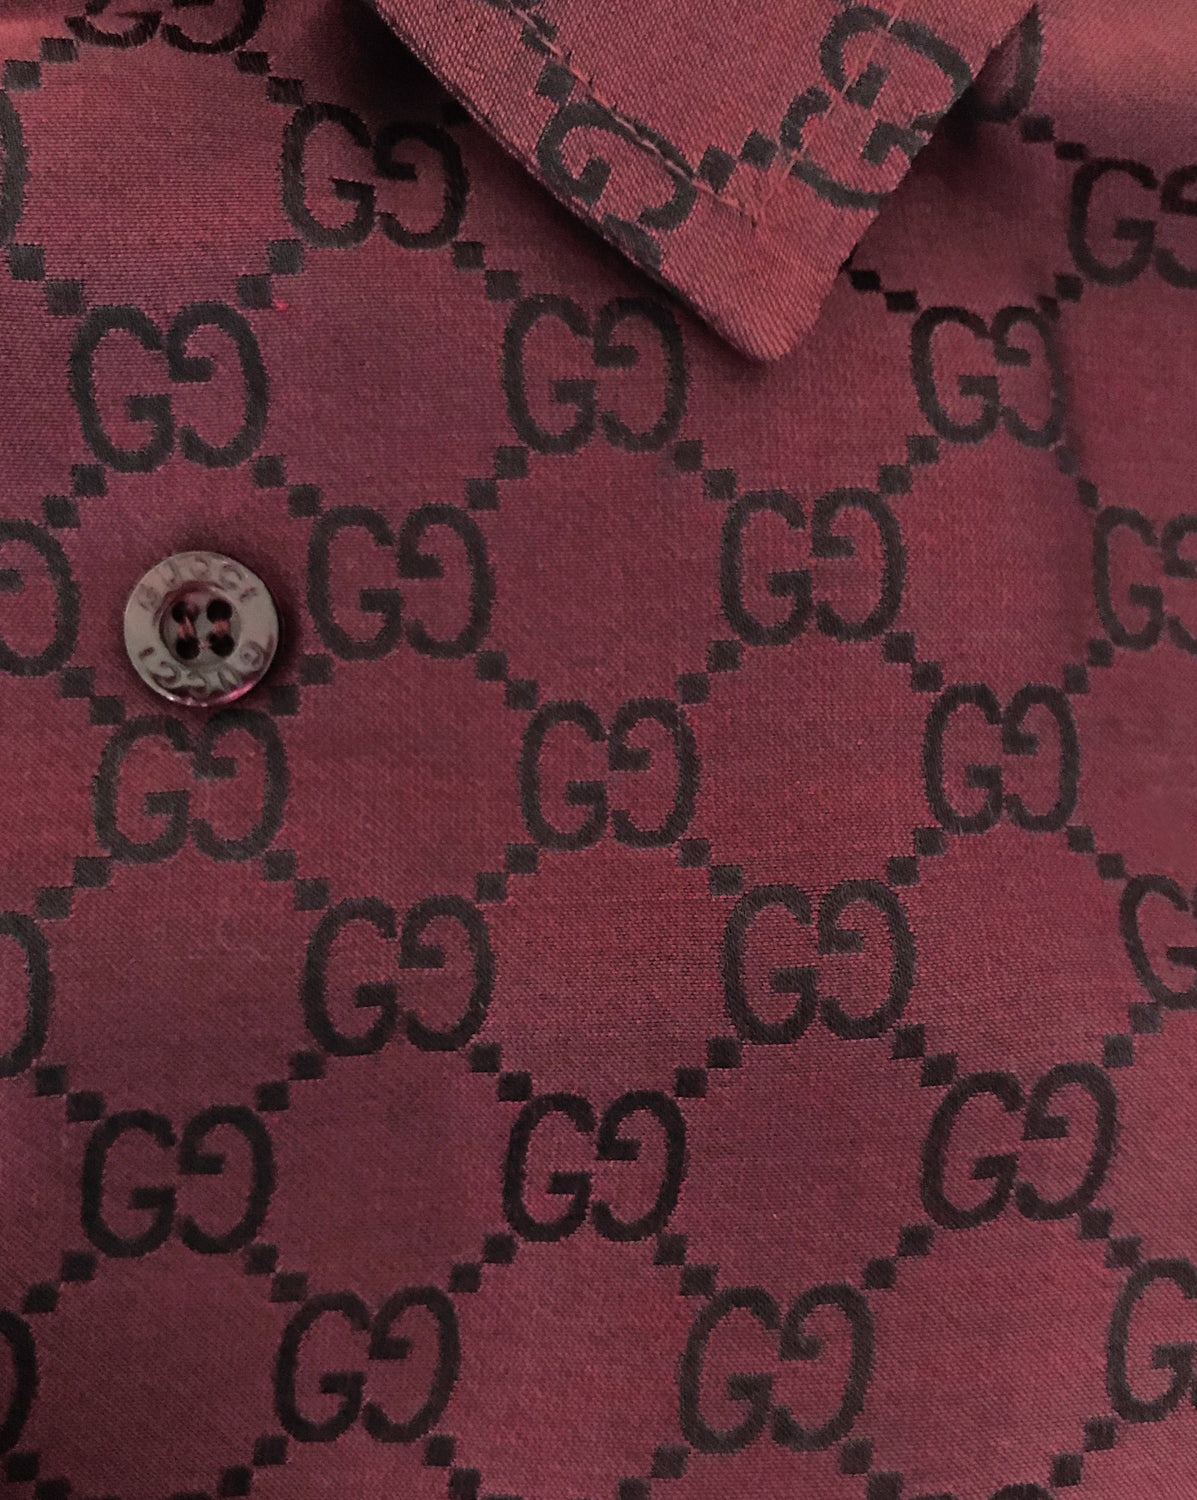 Gucci FW97 by Tom Ford Black Monogram Silk Shirt - Ākaibu Store